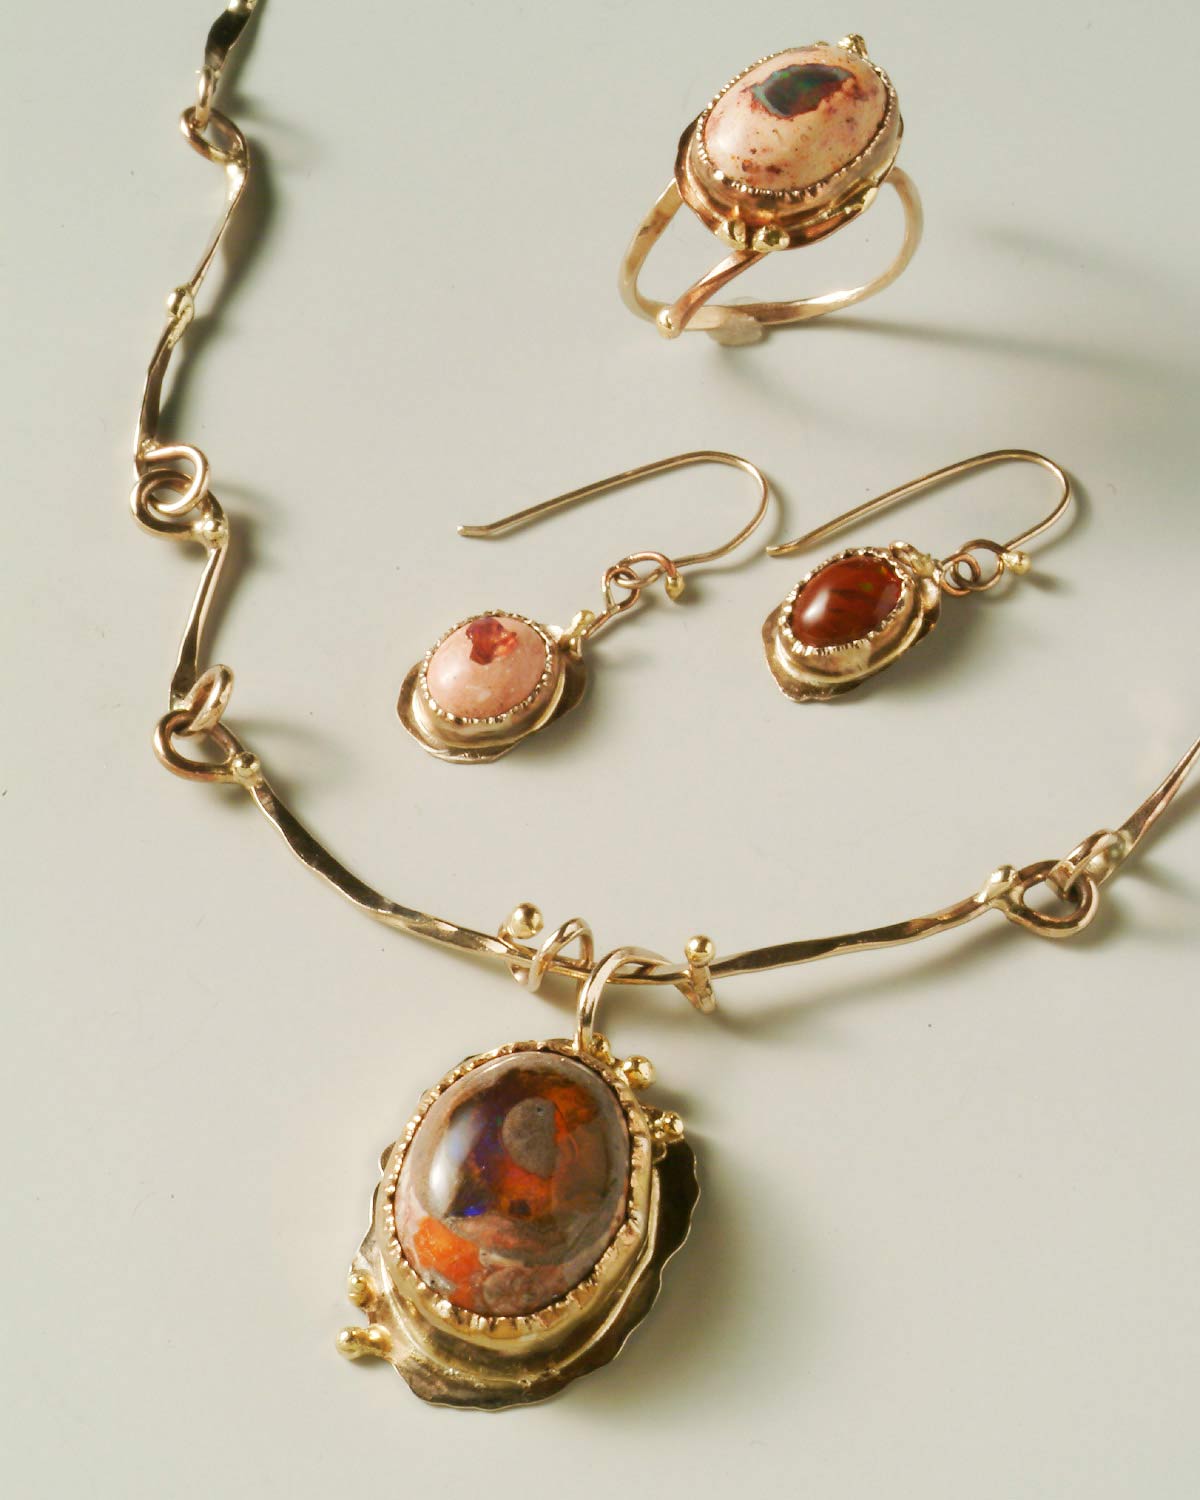 Sweet Dreams スイートドリームの写真 (メキシカンオパールを使ったネックレスとイヤリング、指輪。ネックレスのオパールの中には水が入っている)